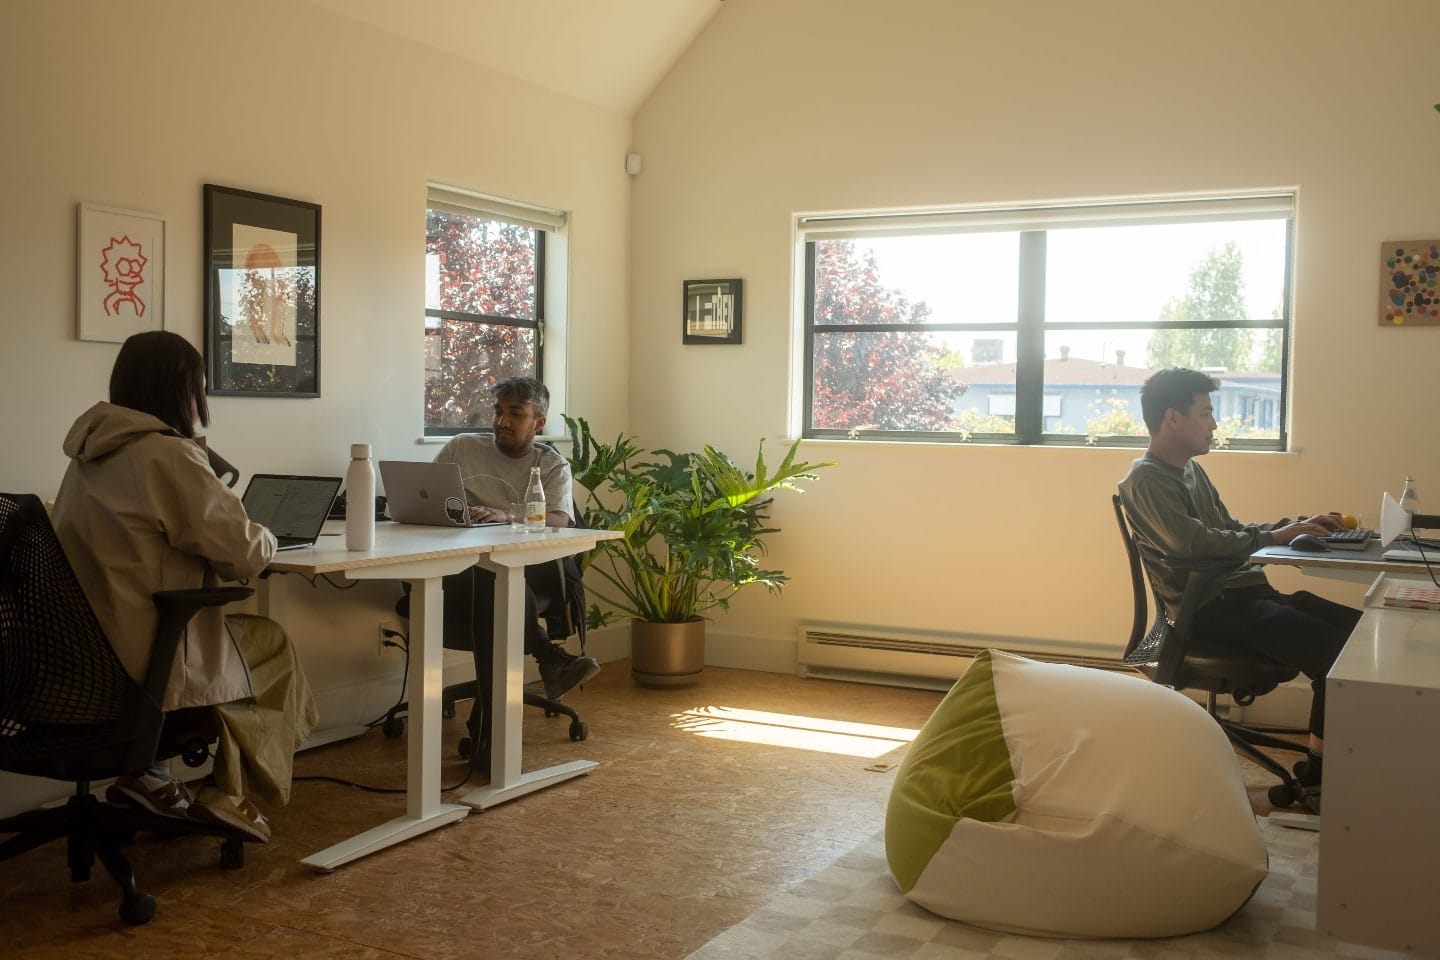 Três pessoas trabalhando em computadores, em um cômodo iluminado pelo Sol.